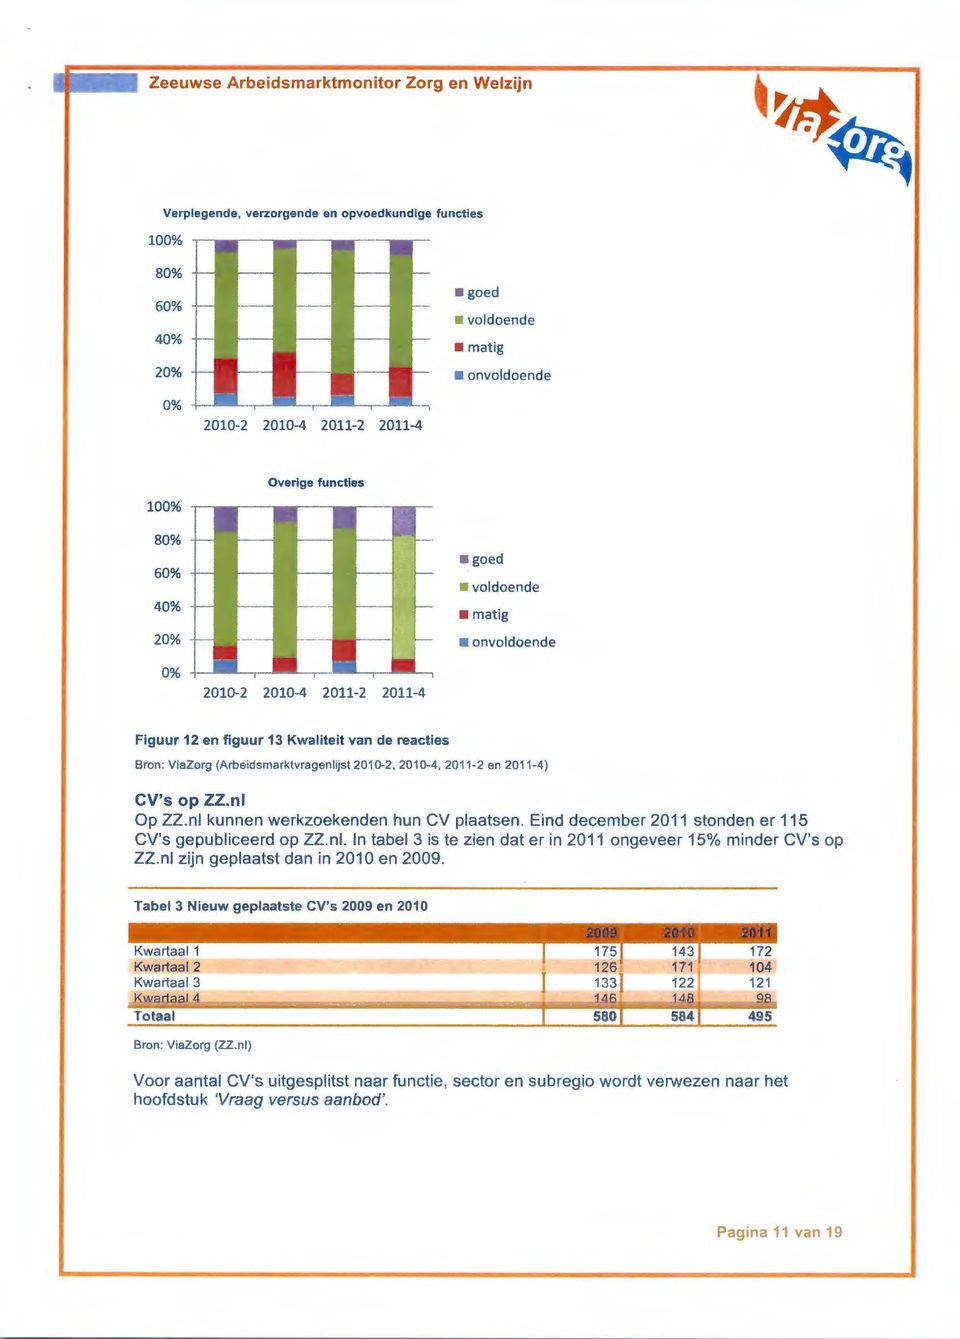 nl kunnen werkzoekenden hun CV plaatsen. Eind december 2011 stonden er 115 CV's gepubliceerd op ZZ.nl. In tabel 3 is te zien dat er in 2011 ongeveer 15% minder CV's op ZZ.